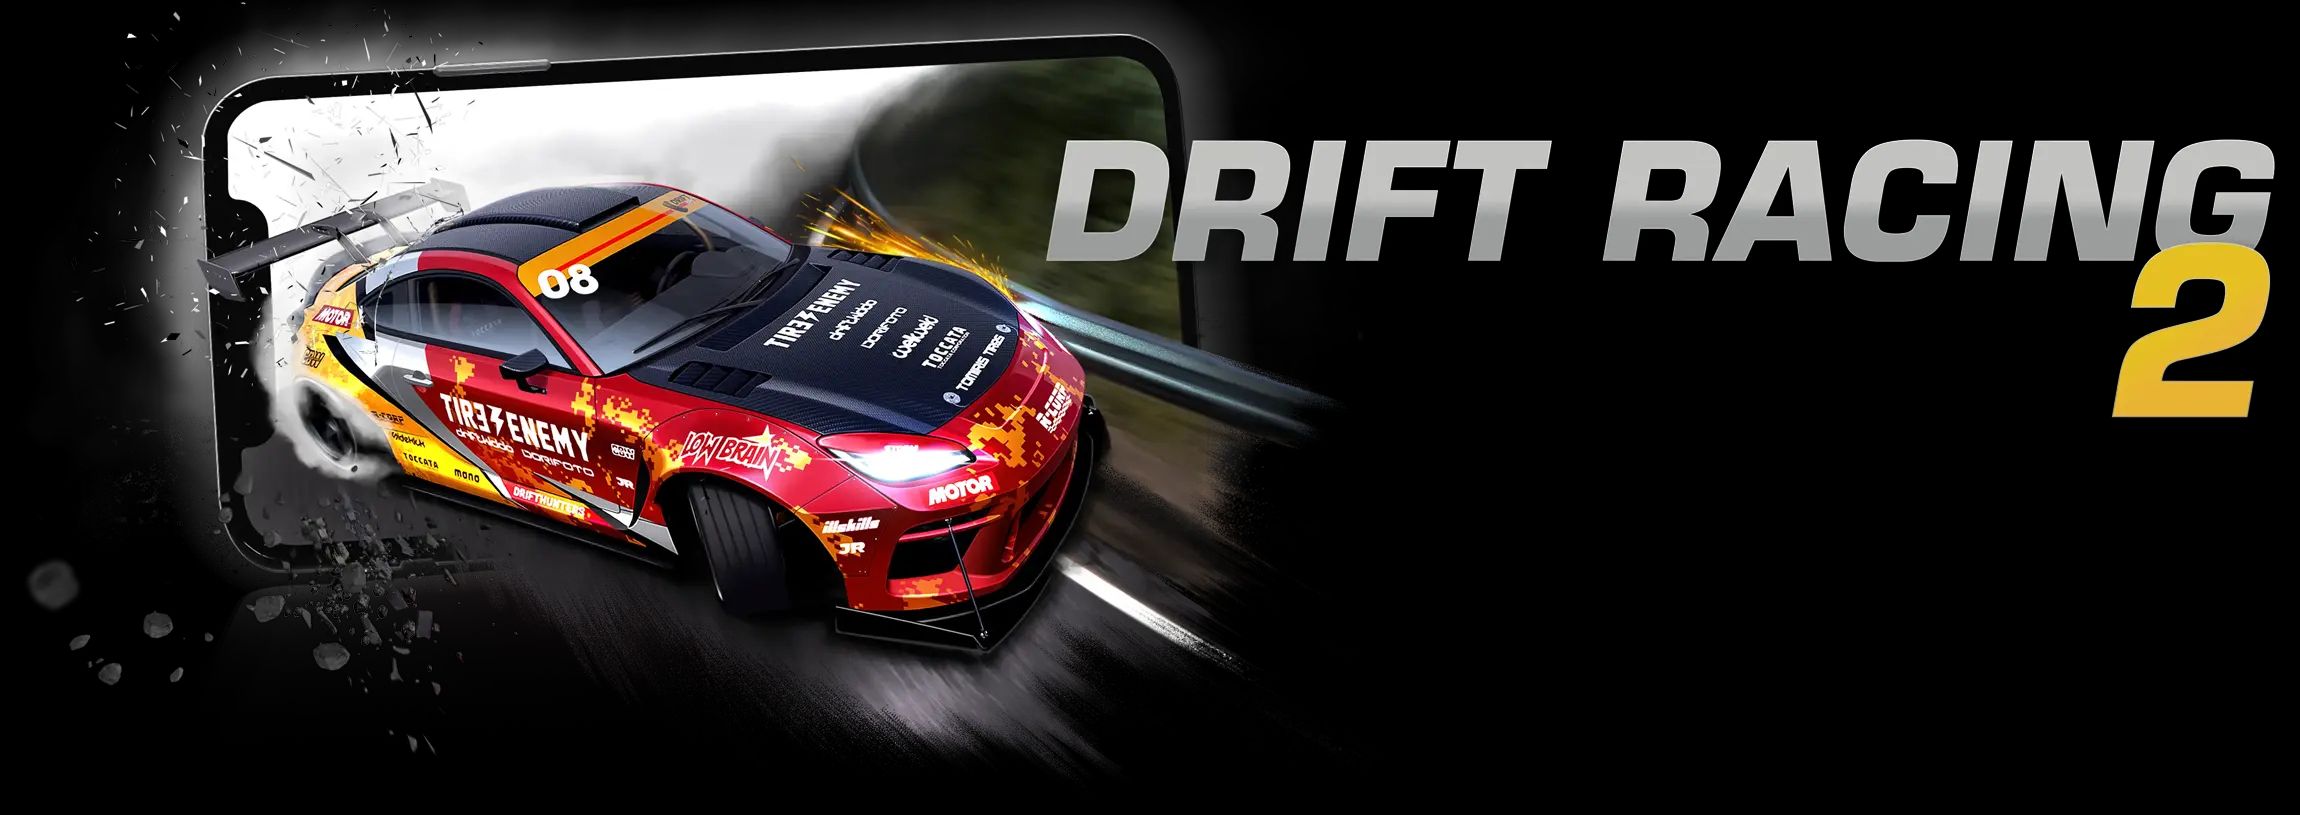 Drift racing 2